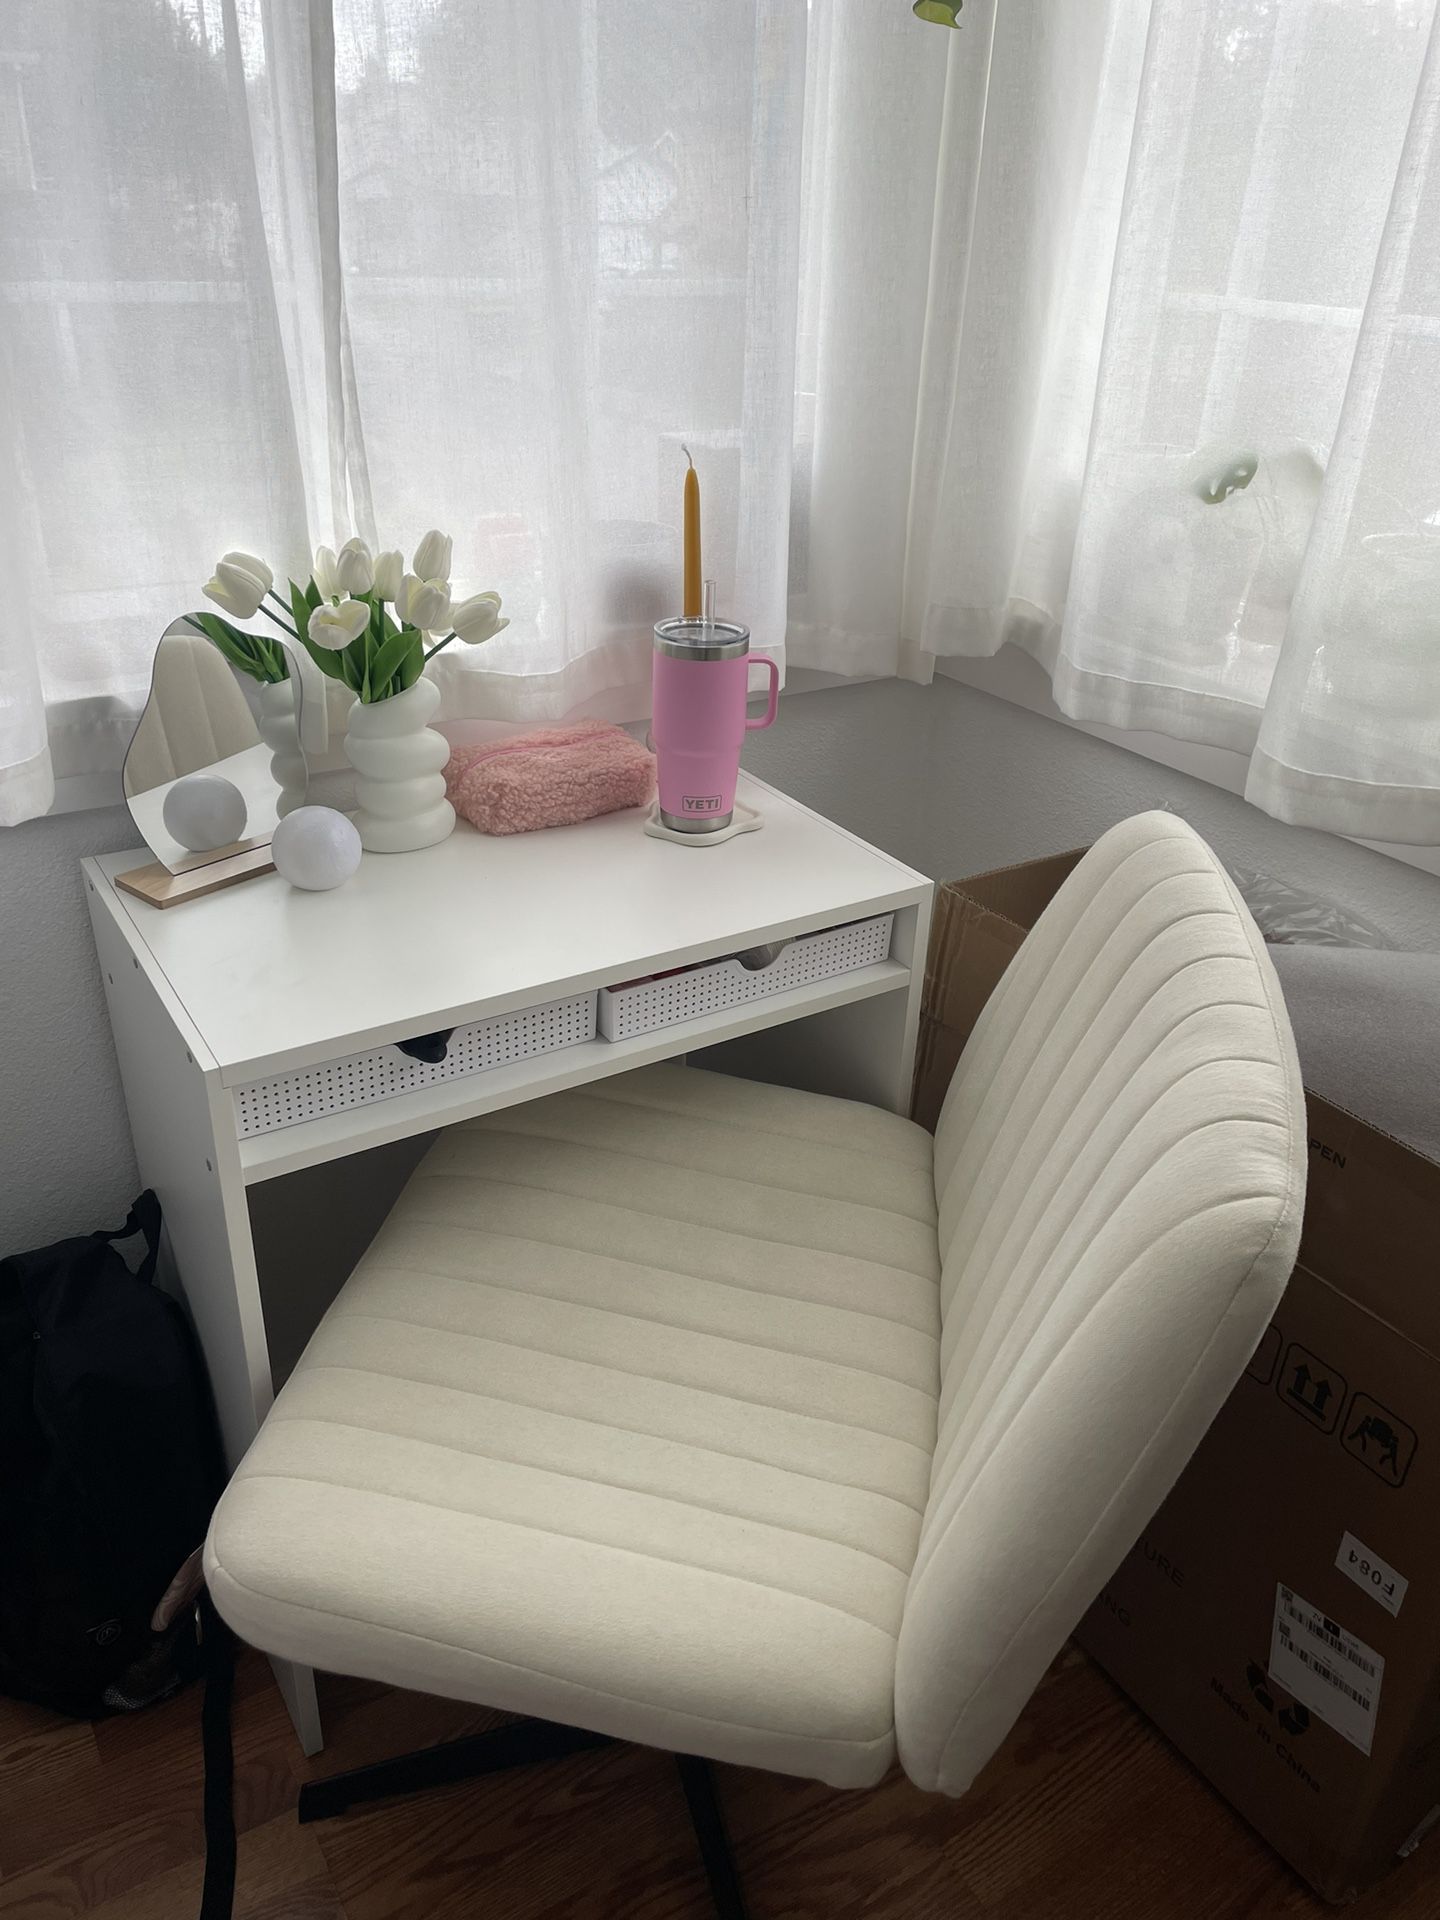 swivel desk chair for office or vanity 